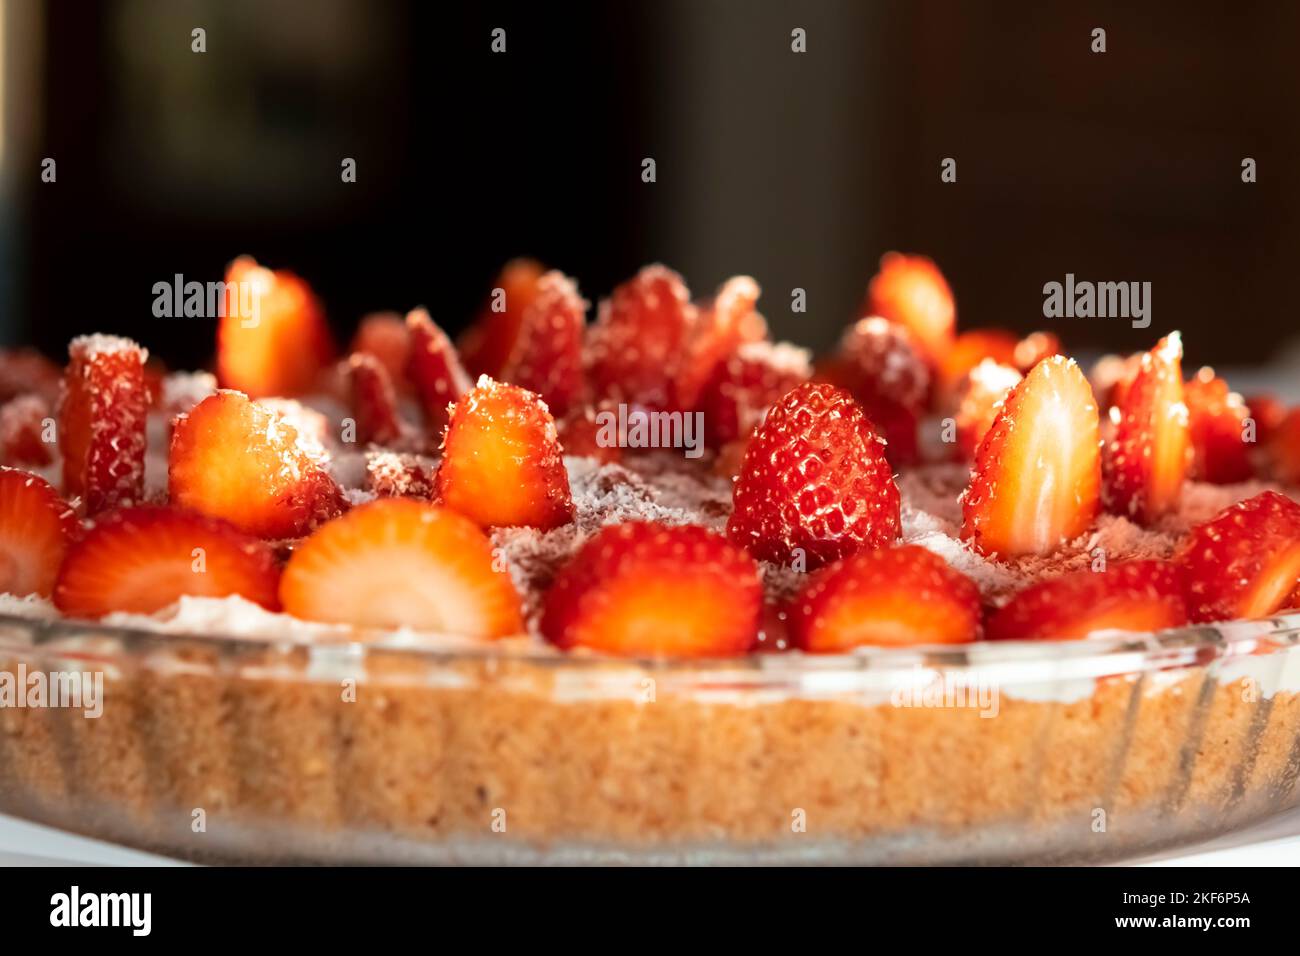 Tarte aux fraises noix de coco arrosée vue latérale macro photographie dans une plaque circulaire sous la lumière naturelle du jour. Faible profondeur de champ avec mise au point sélectionnée. Banque D'Images